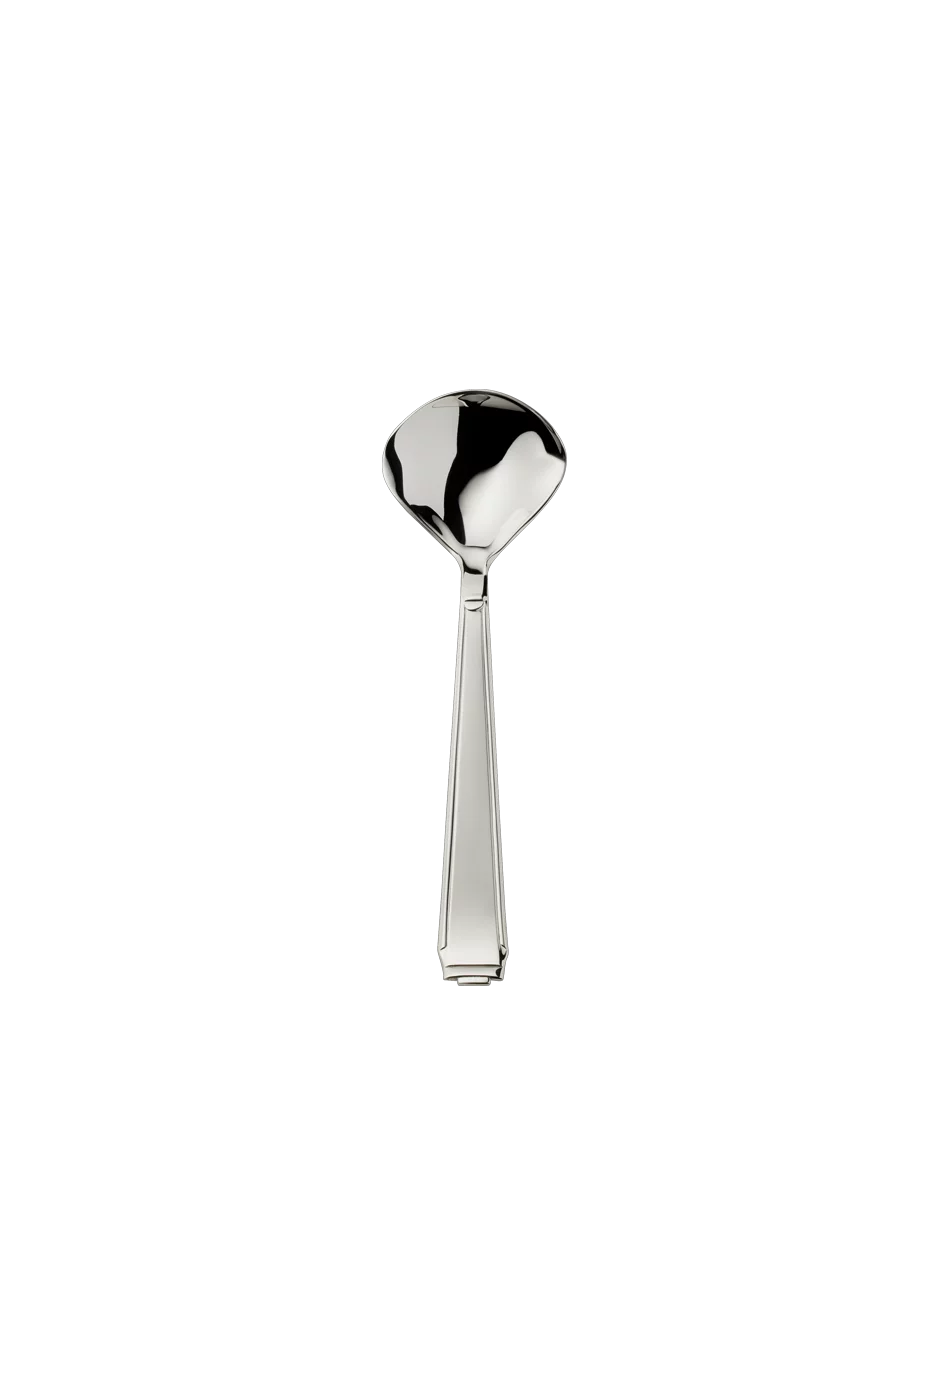 Art Deco Sugar Spoon (150g massive silverplated)